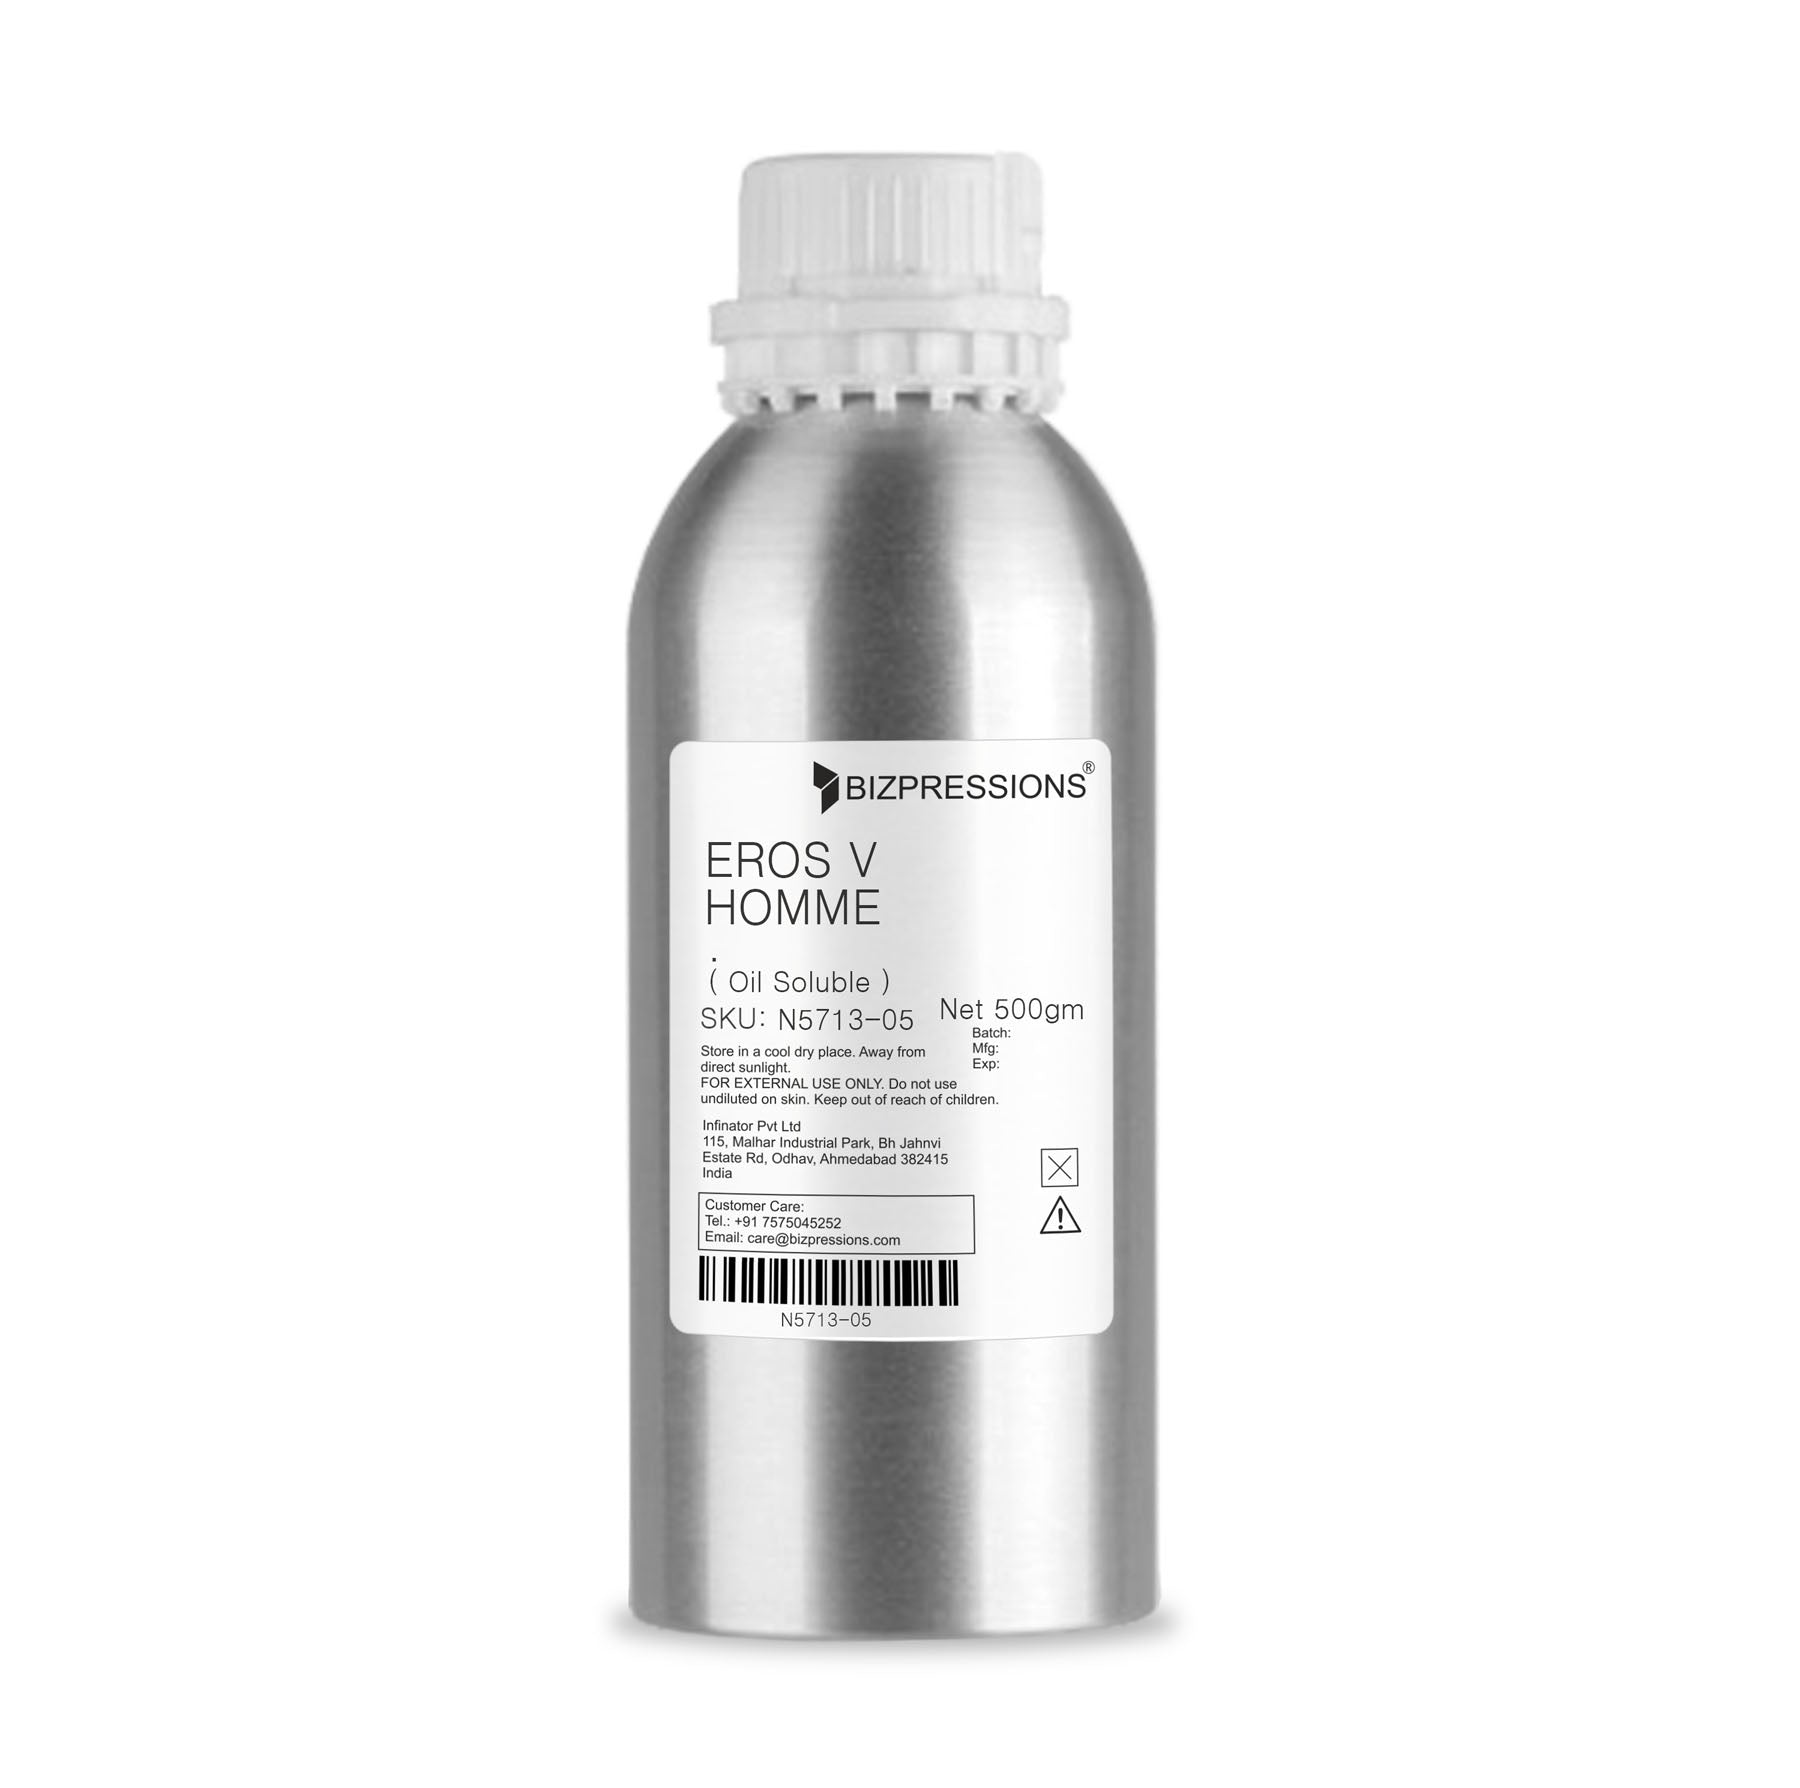 EROS V HOMME - Fragrance ( Oil Soluble ) - 500 gm